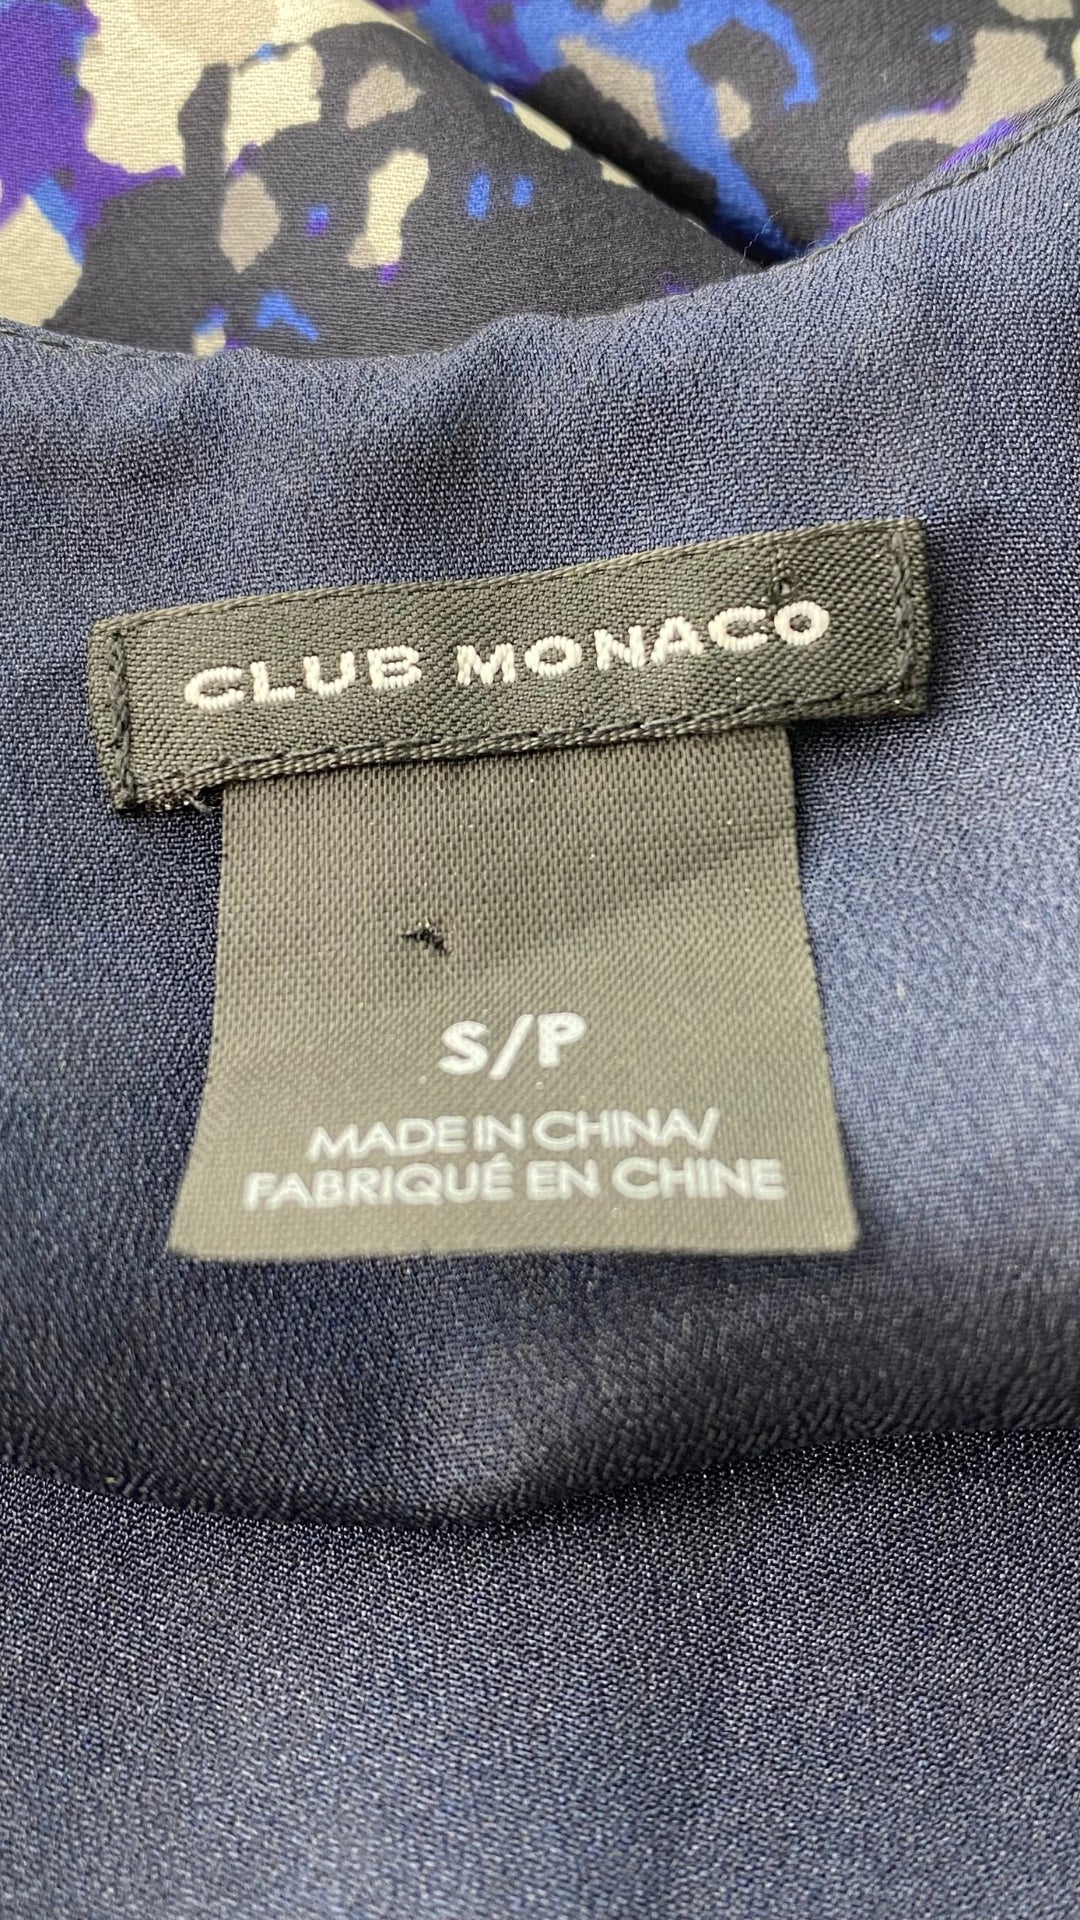 Robe ample en soie à dos dégagé, Club Monaco, taille small. Vue de l'étiquette de marque et taille.